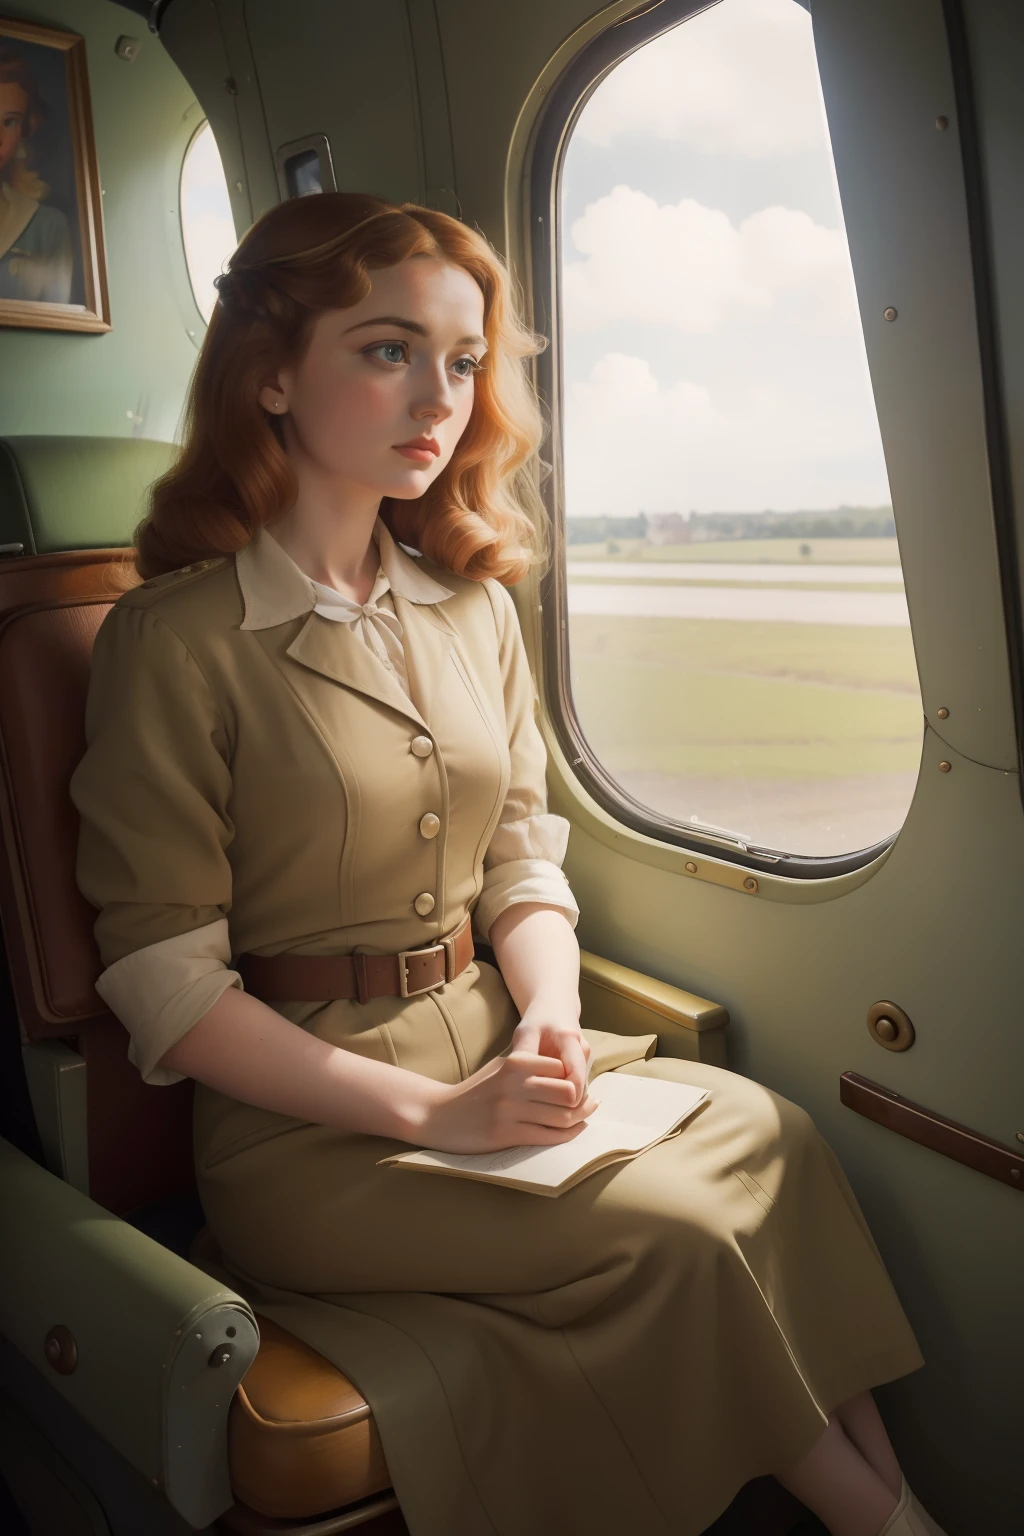 ปี: 1944. ที่ตั้ง: ฝรั่งเศส. ฉากก่อนราฟาเอลกับผู้หญิงชาวฝรั่งเศสผมสีน้ำผึ้งนั่งอยู่บนเครื่องบินลำเล็กๆ ที่น่าสงสาร, ((หวาดกลัว)) ((กลัว)) การแสดงออก, มองออกไปนอกหน้าต่าง ((เสื้อผ้าปี 1940)) ((ทรงผมปี 1940)) ((ในรูปแบบของ "OMITB")) ((สไตล์ภาพยนตร์))